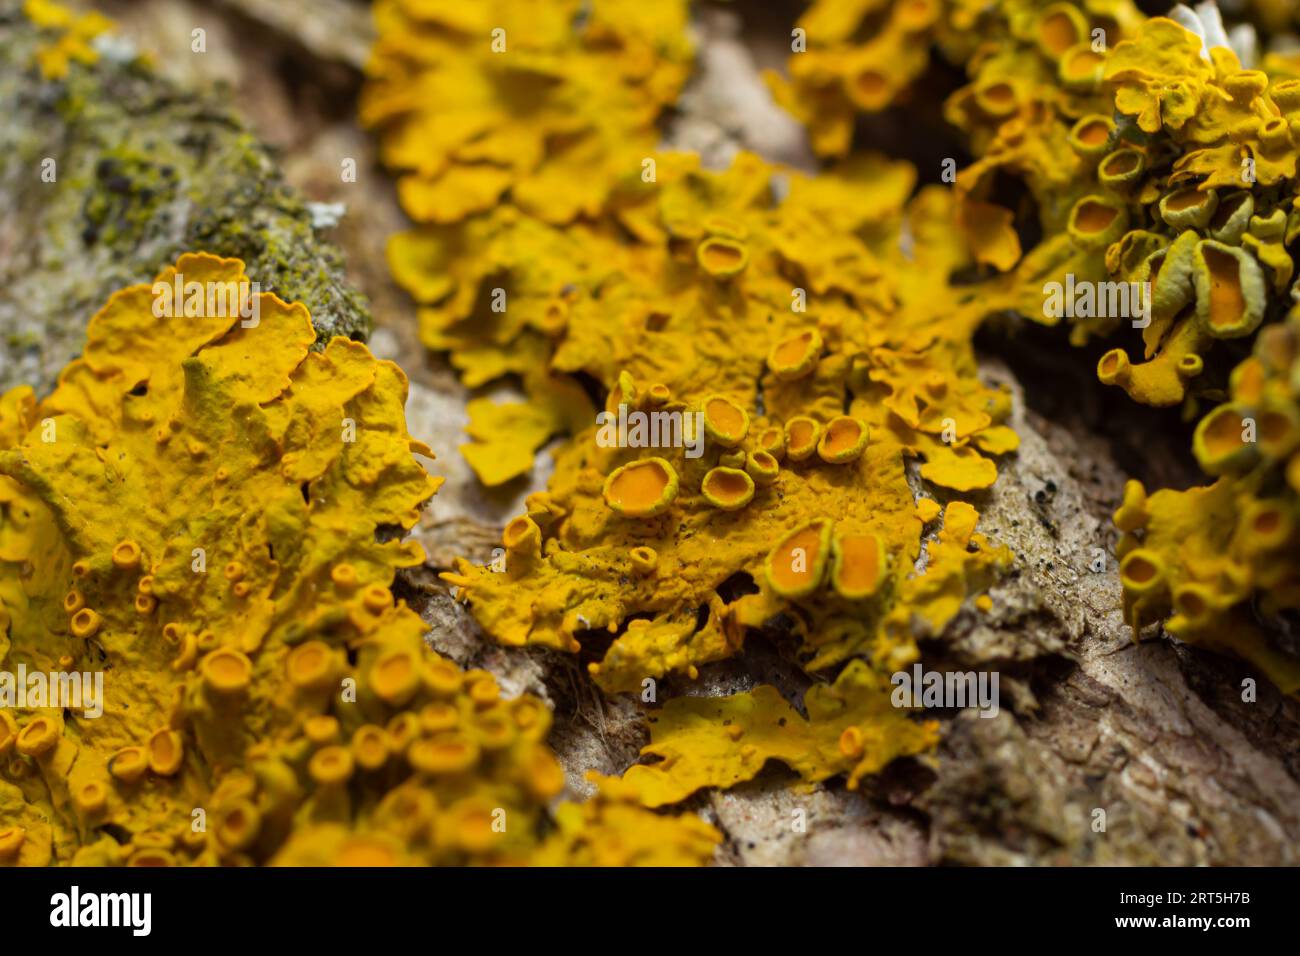 Xanthoria parietina common orange lichen, yellow scale, maritime sunburst lichen and shore lichen on the bark of tree branch. Thin dry branch with ora Stock Photo